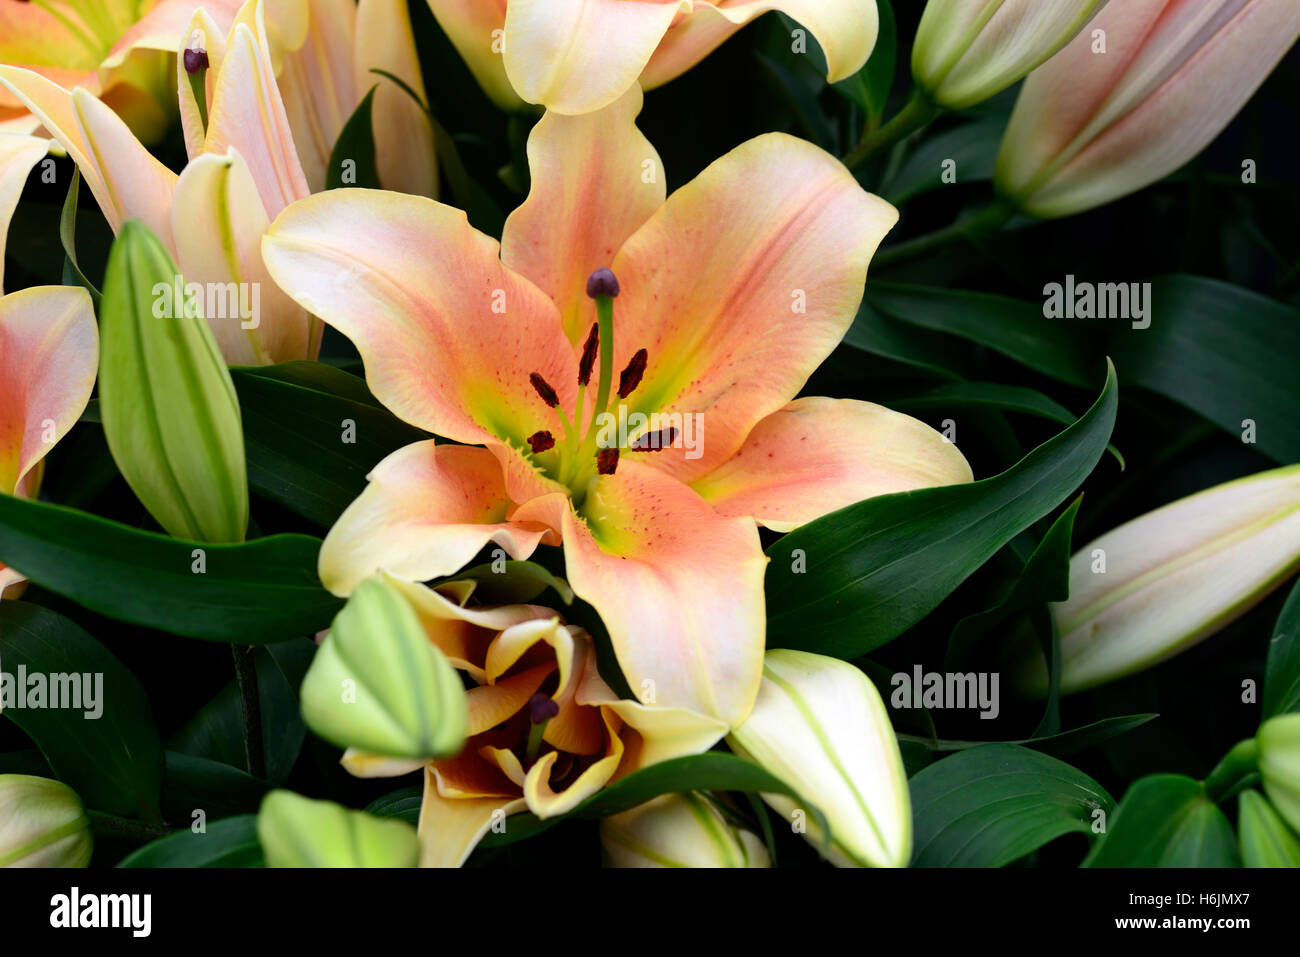 Il Lilium zelmira Orienpet lily gigli arancio salmone colore colore fiore fiori fioritura profumata profumo fragrante floreale RM Foto Stock